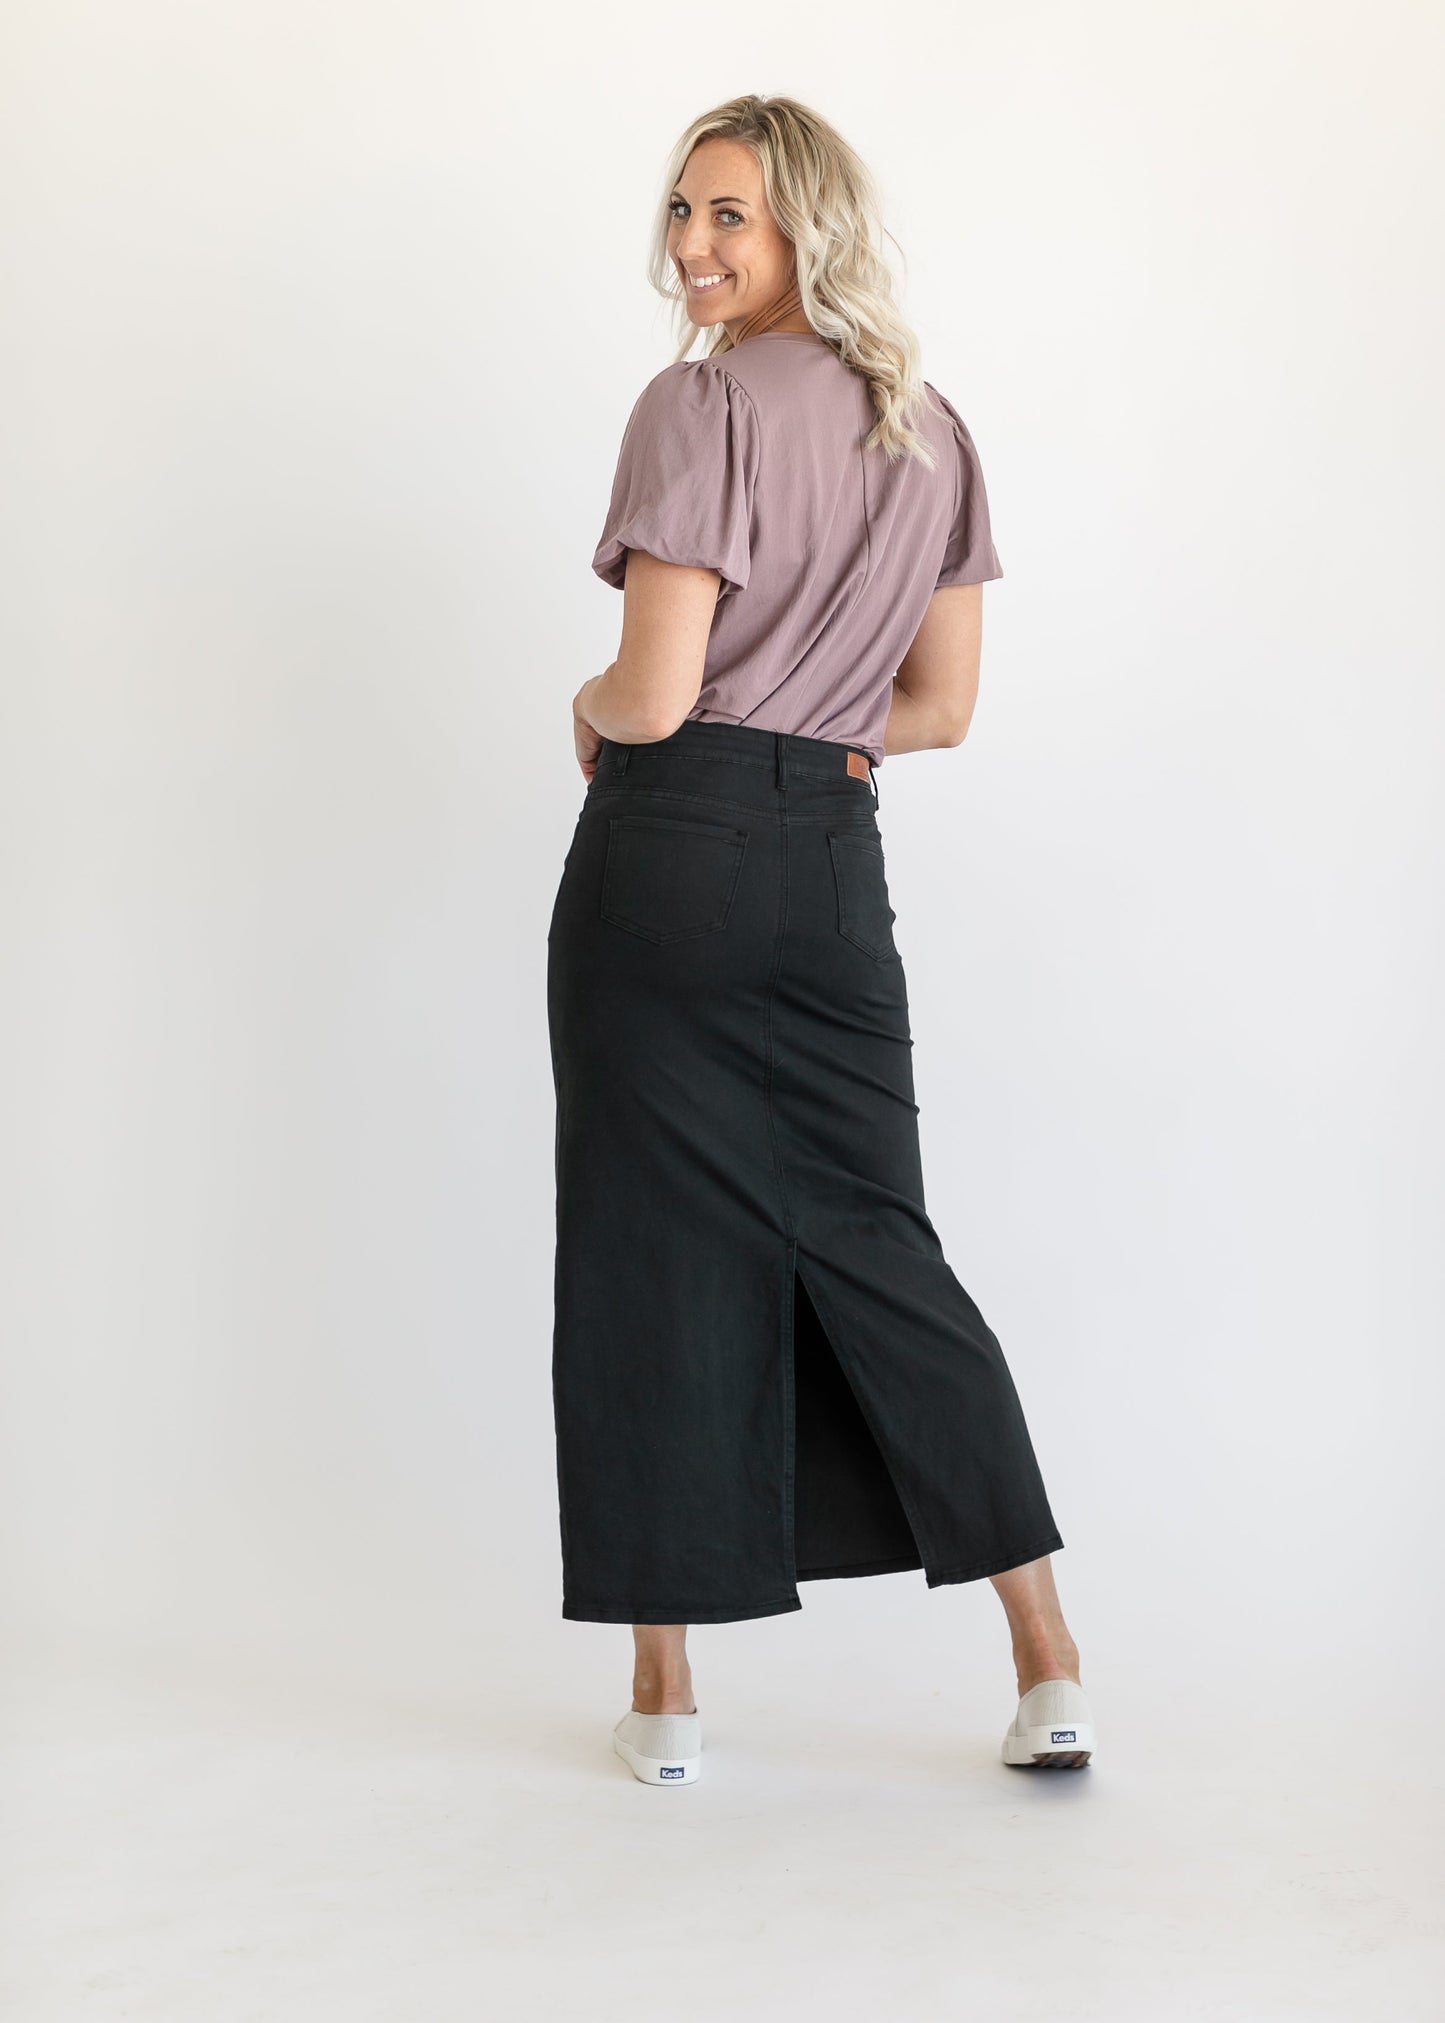 Stella Jet Black Denim Maxi Skirt IC Skirts